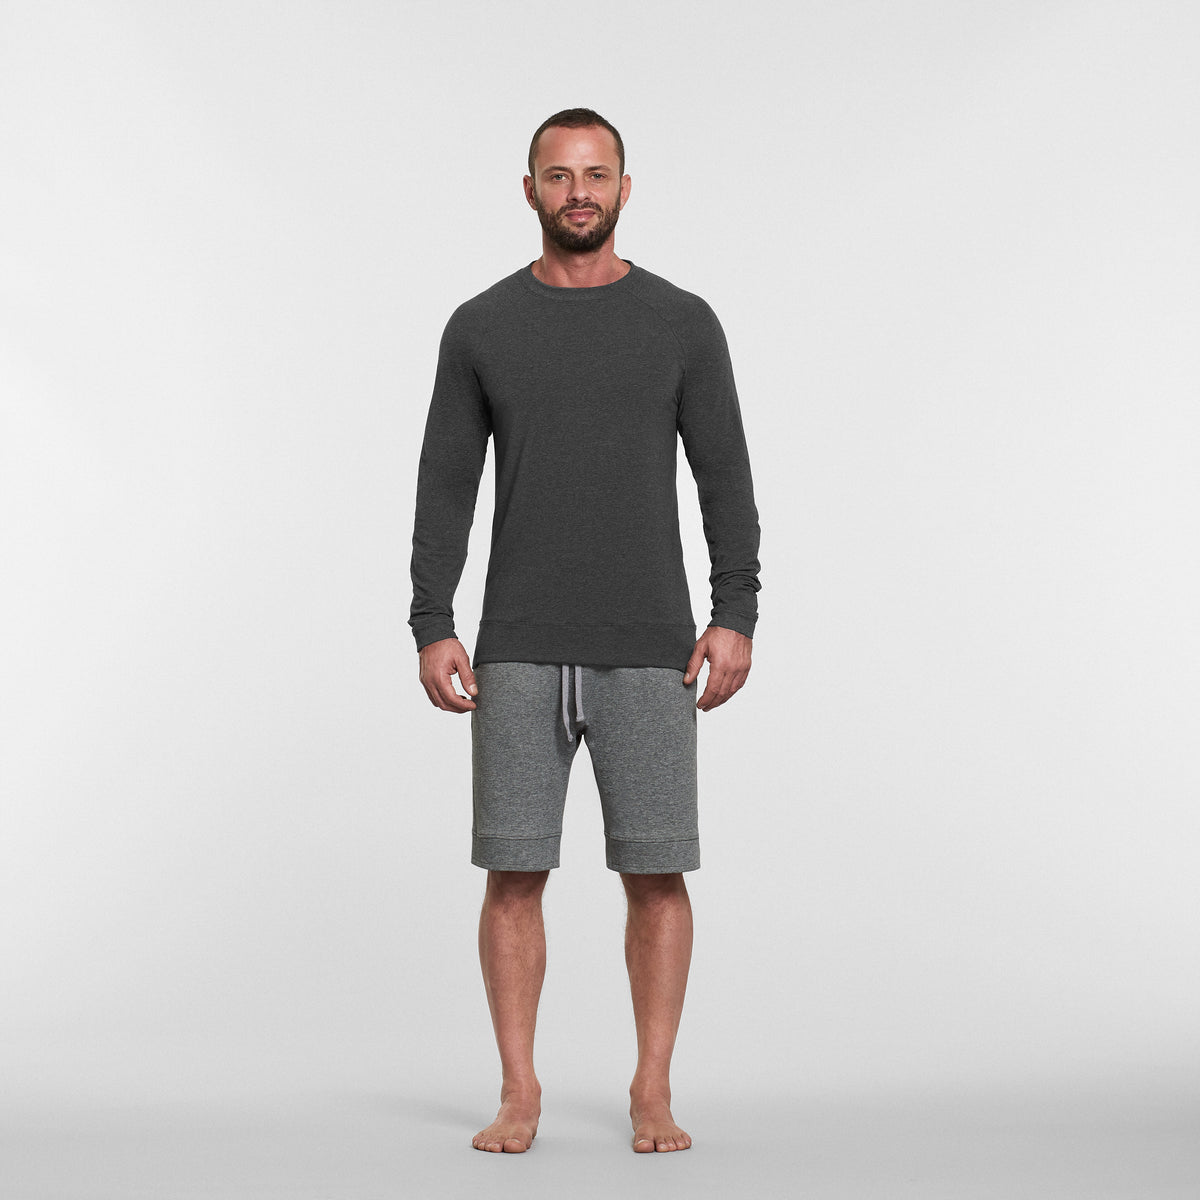 man wearing grey long sleeved yoga top and grey yoga shorts 